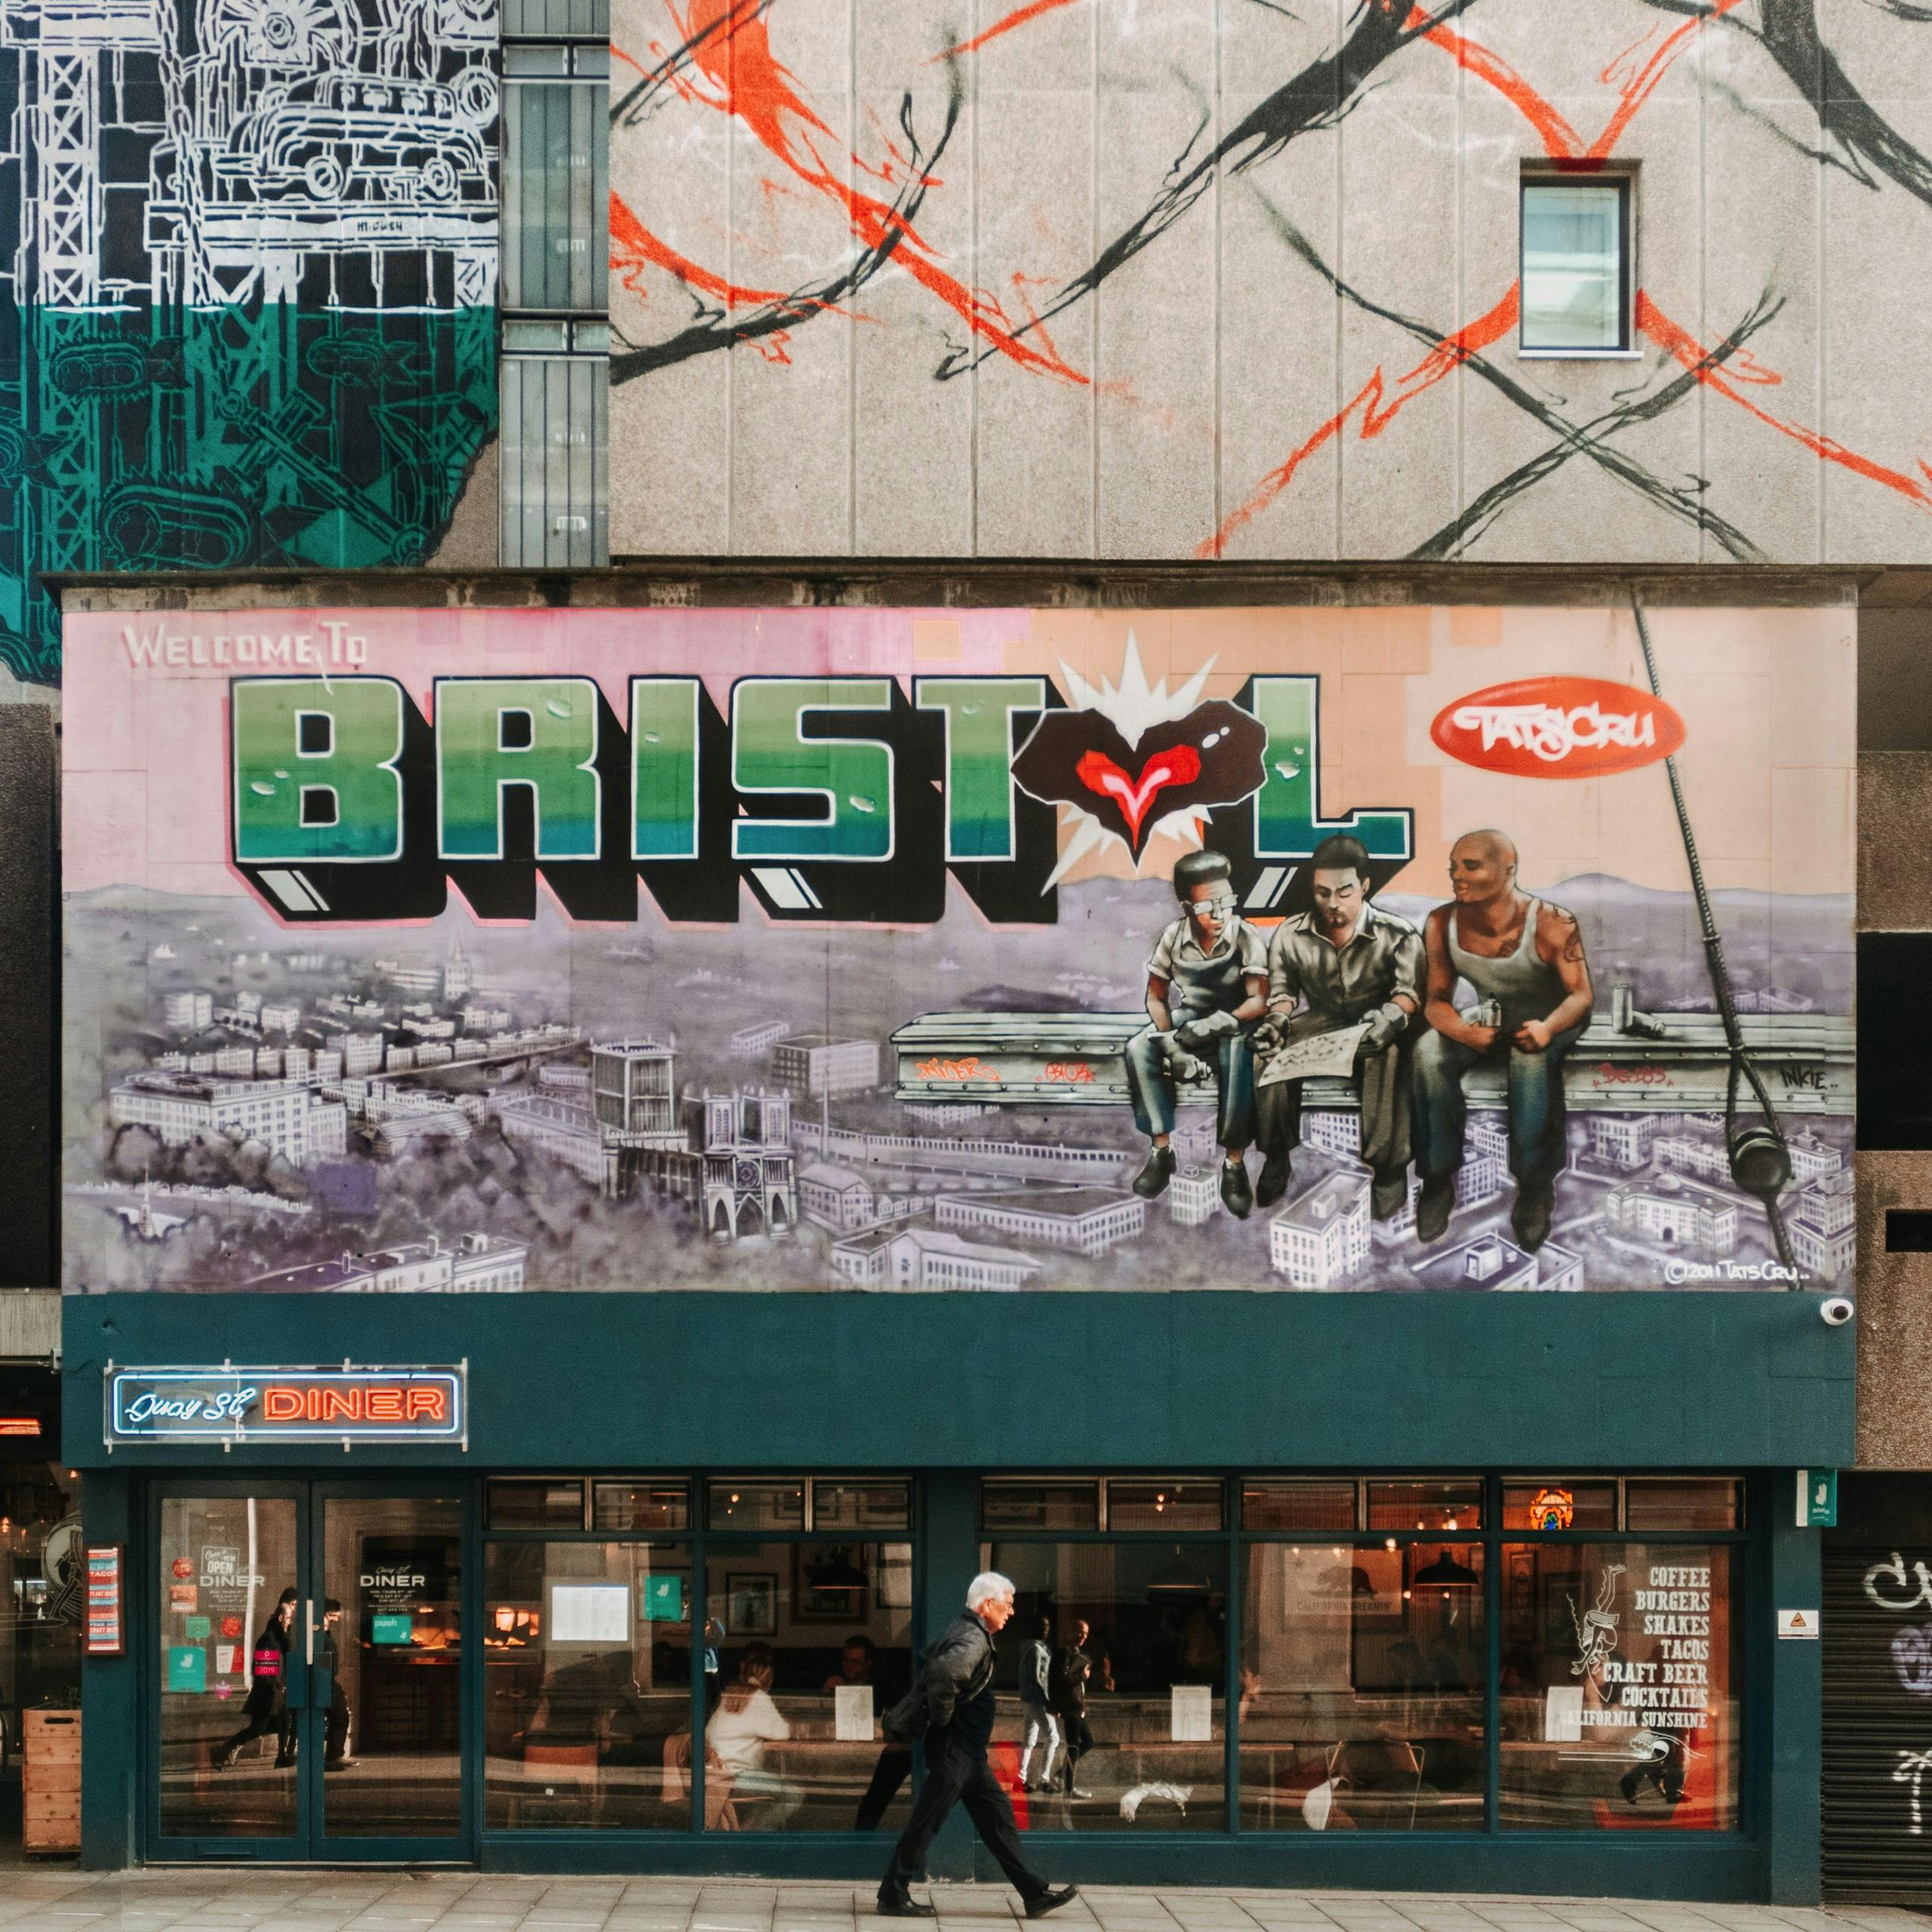 Bristol Street Art met Banksy en Capital of Graffiti verkenningsspel